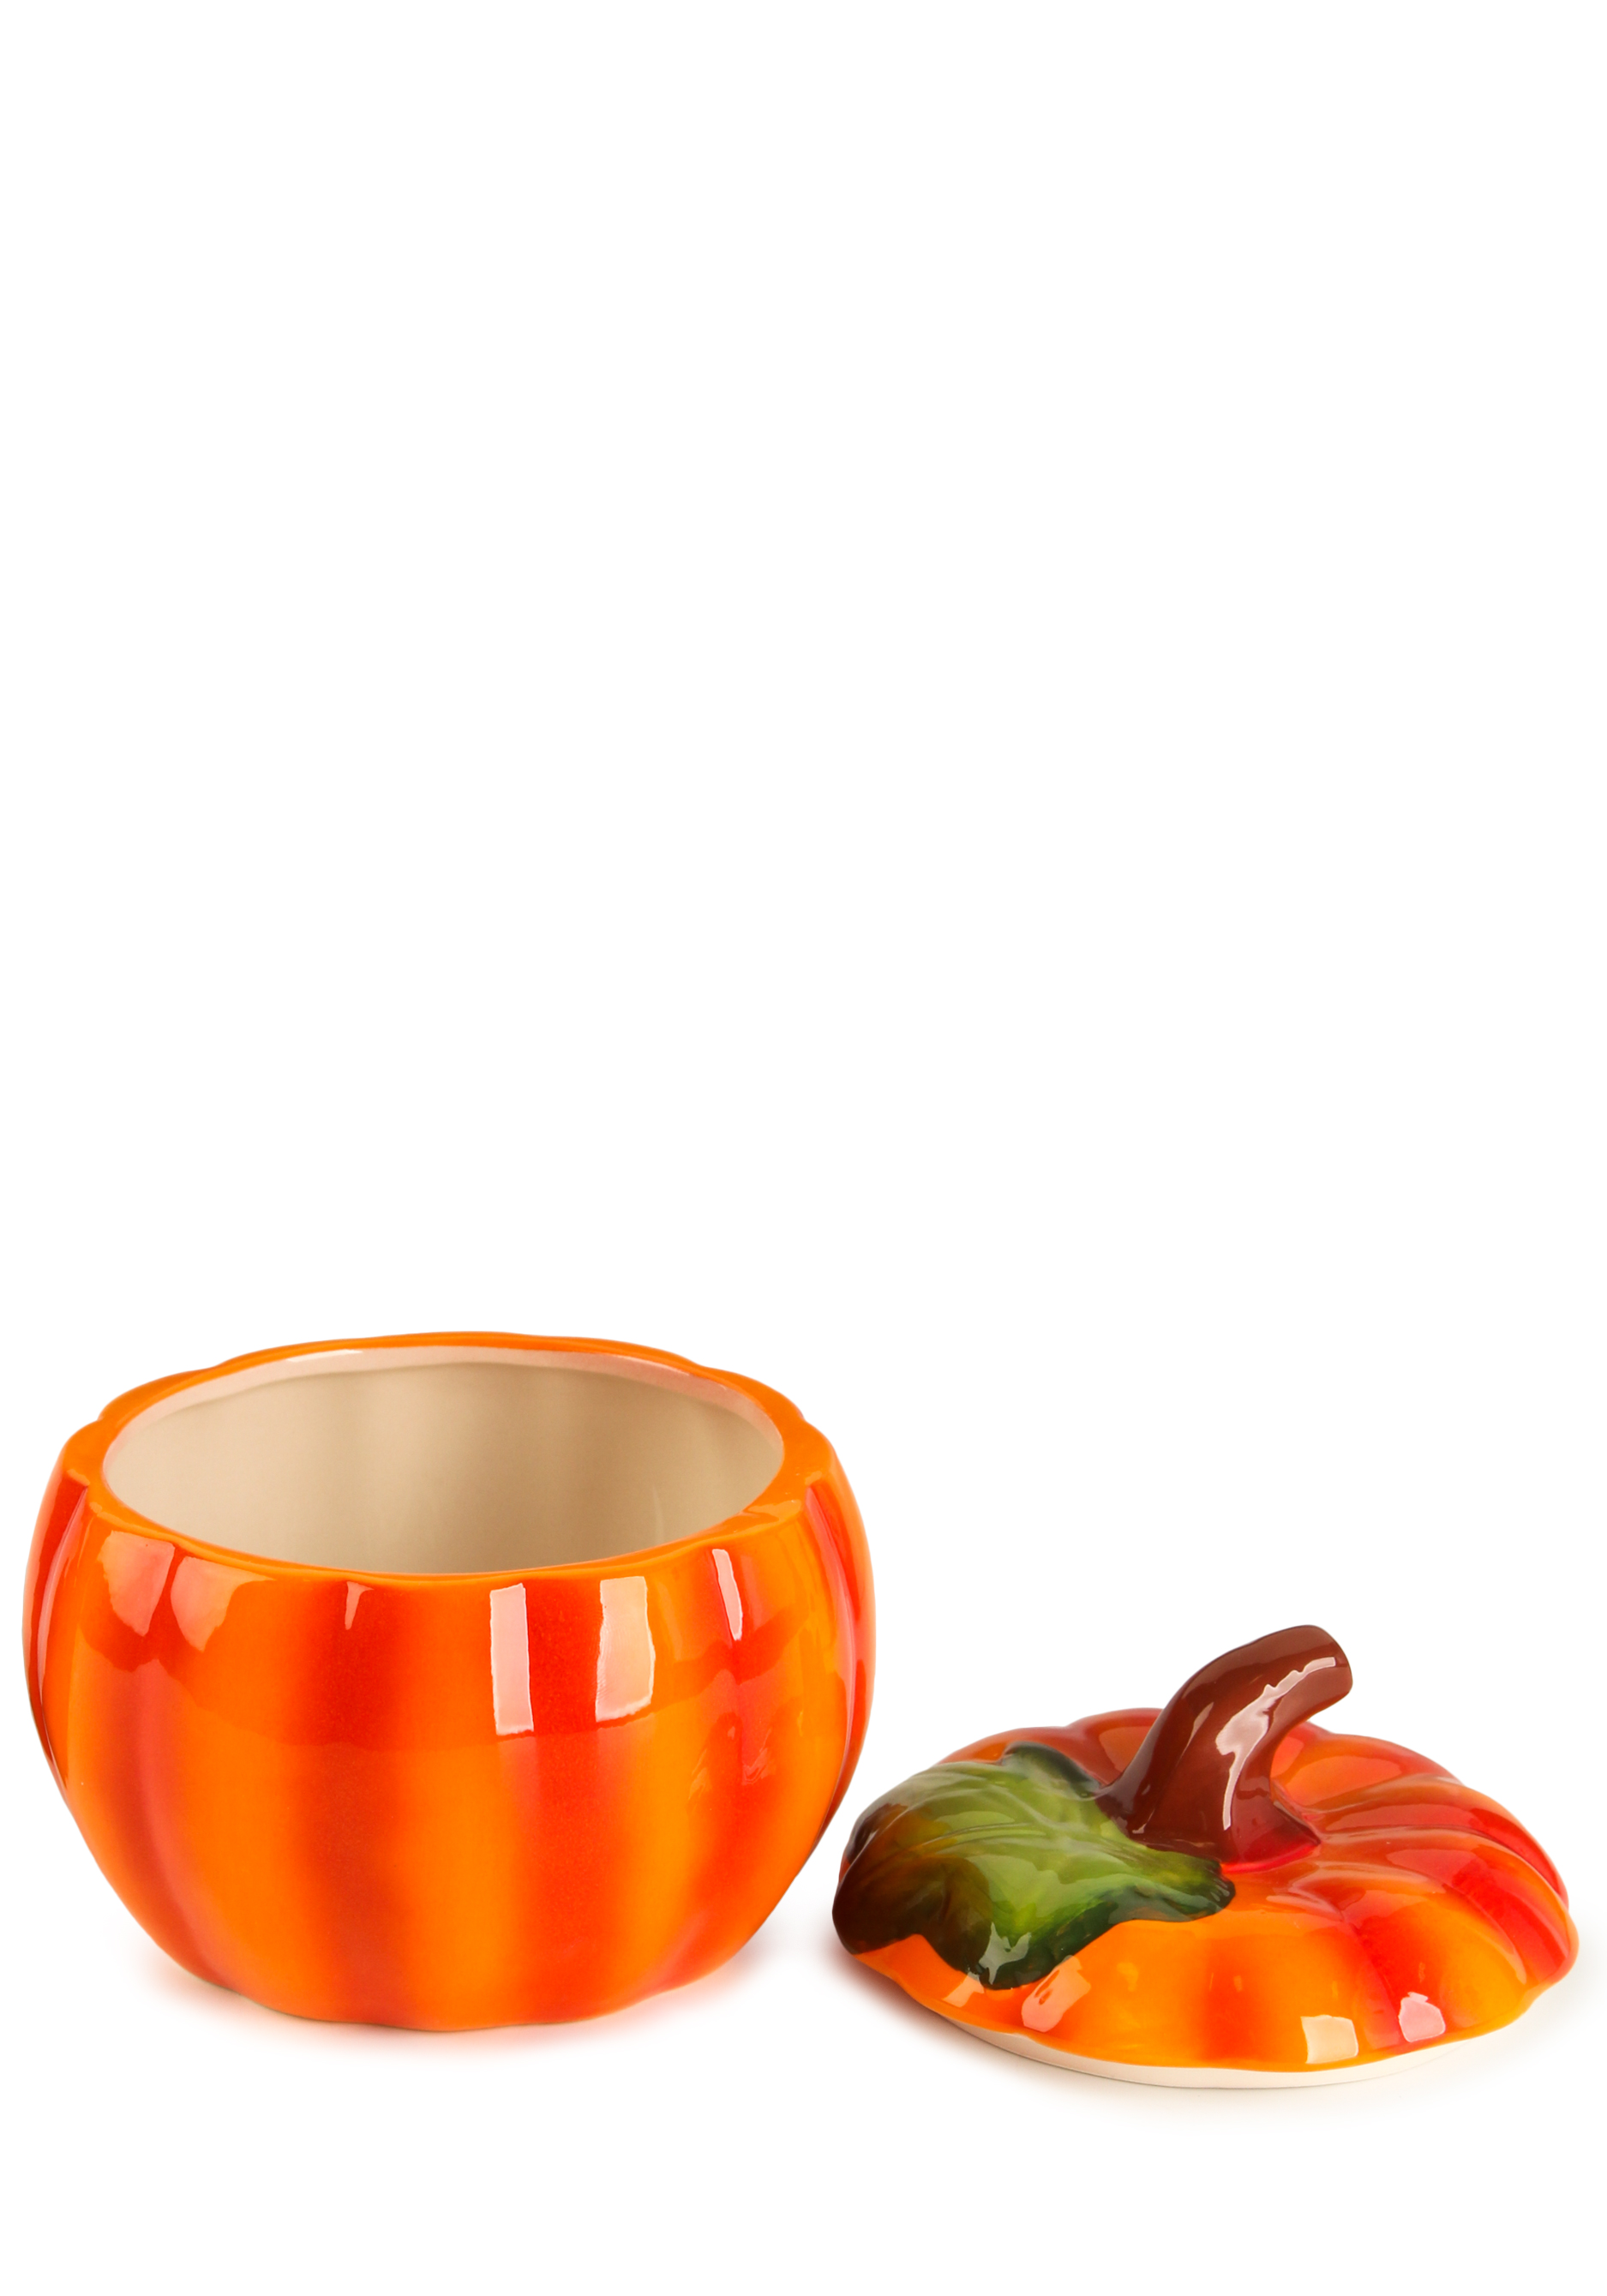 Форма для запекания с крышкой "Тыква" Royal Classics, цвет оранжевый, размер 600 мл (13 x 12 см) - фото 3